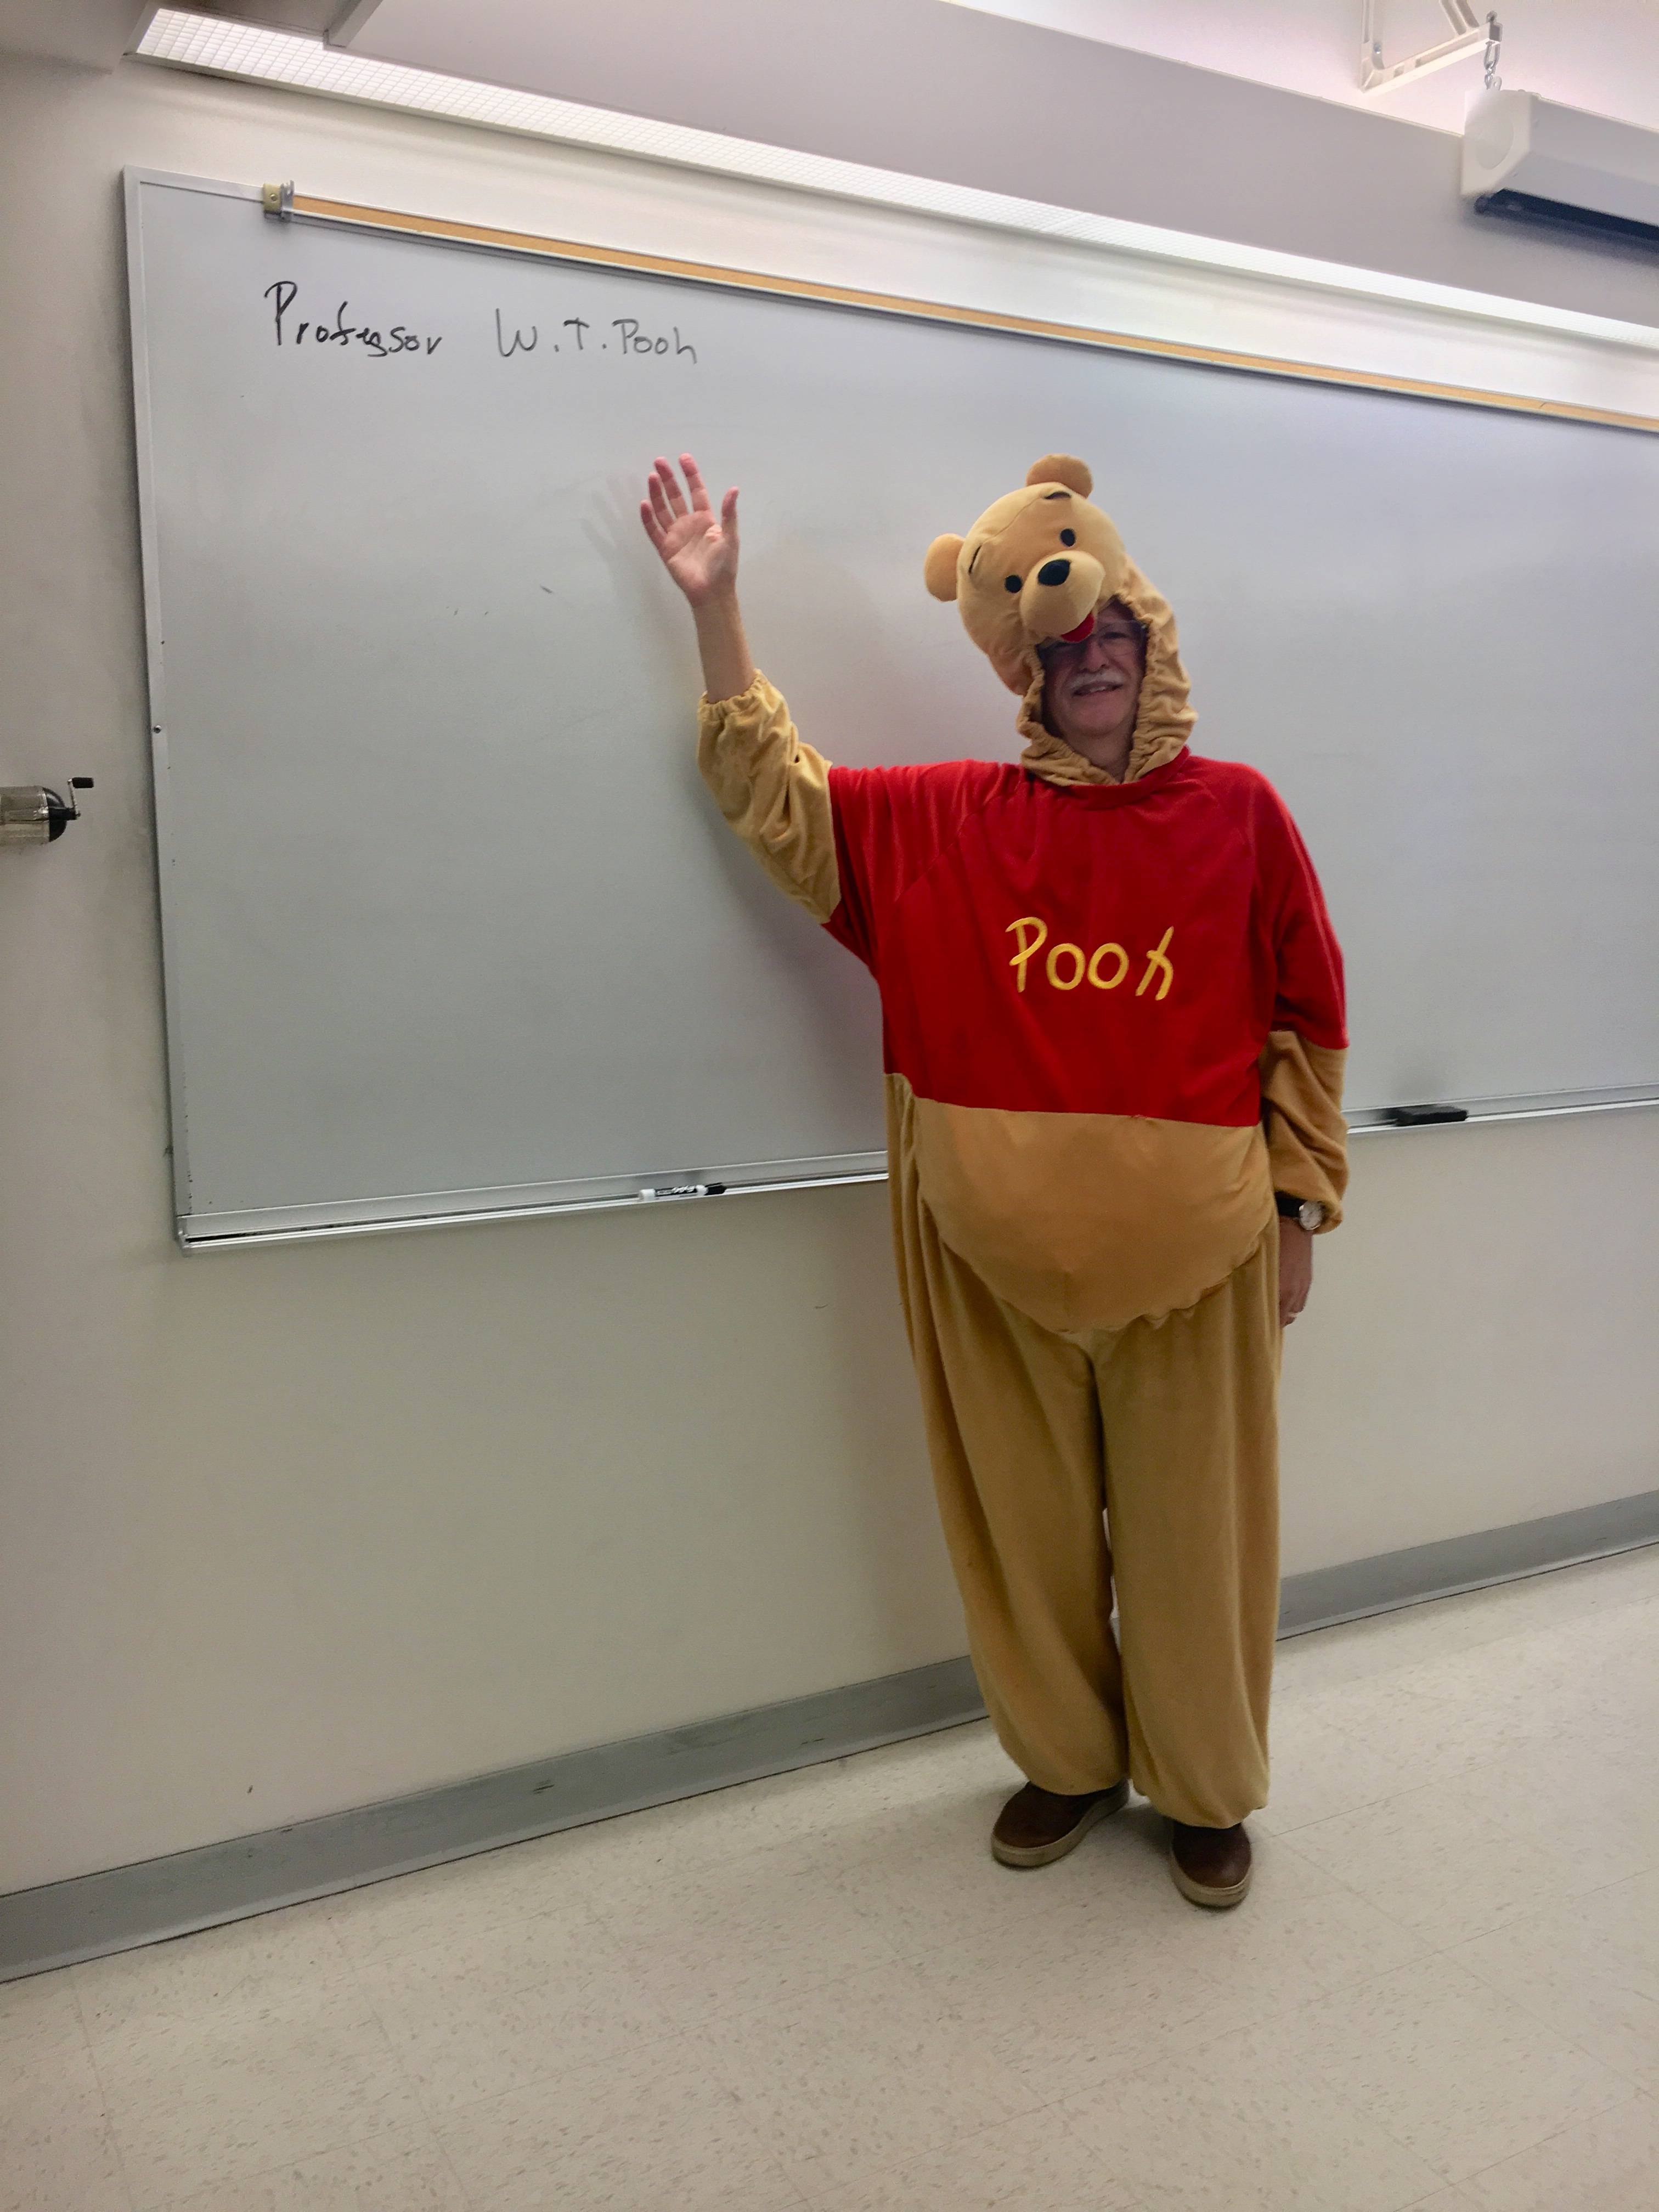 Professor W.T. Pooh